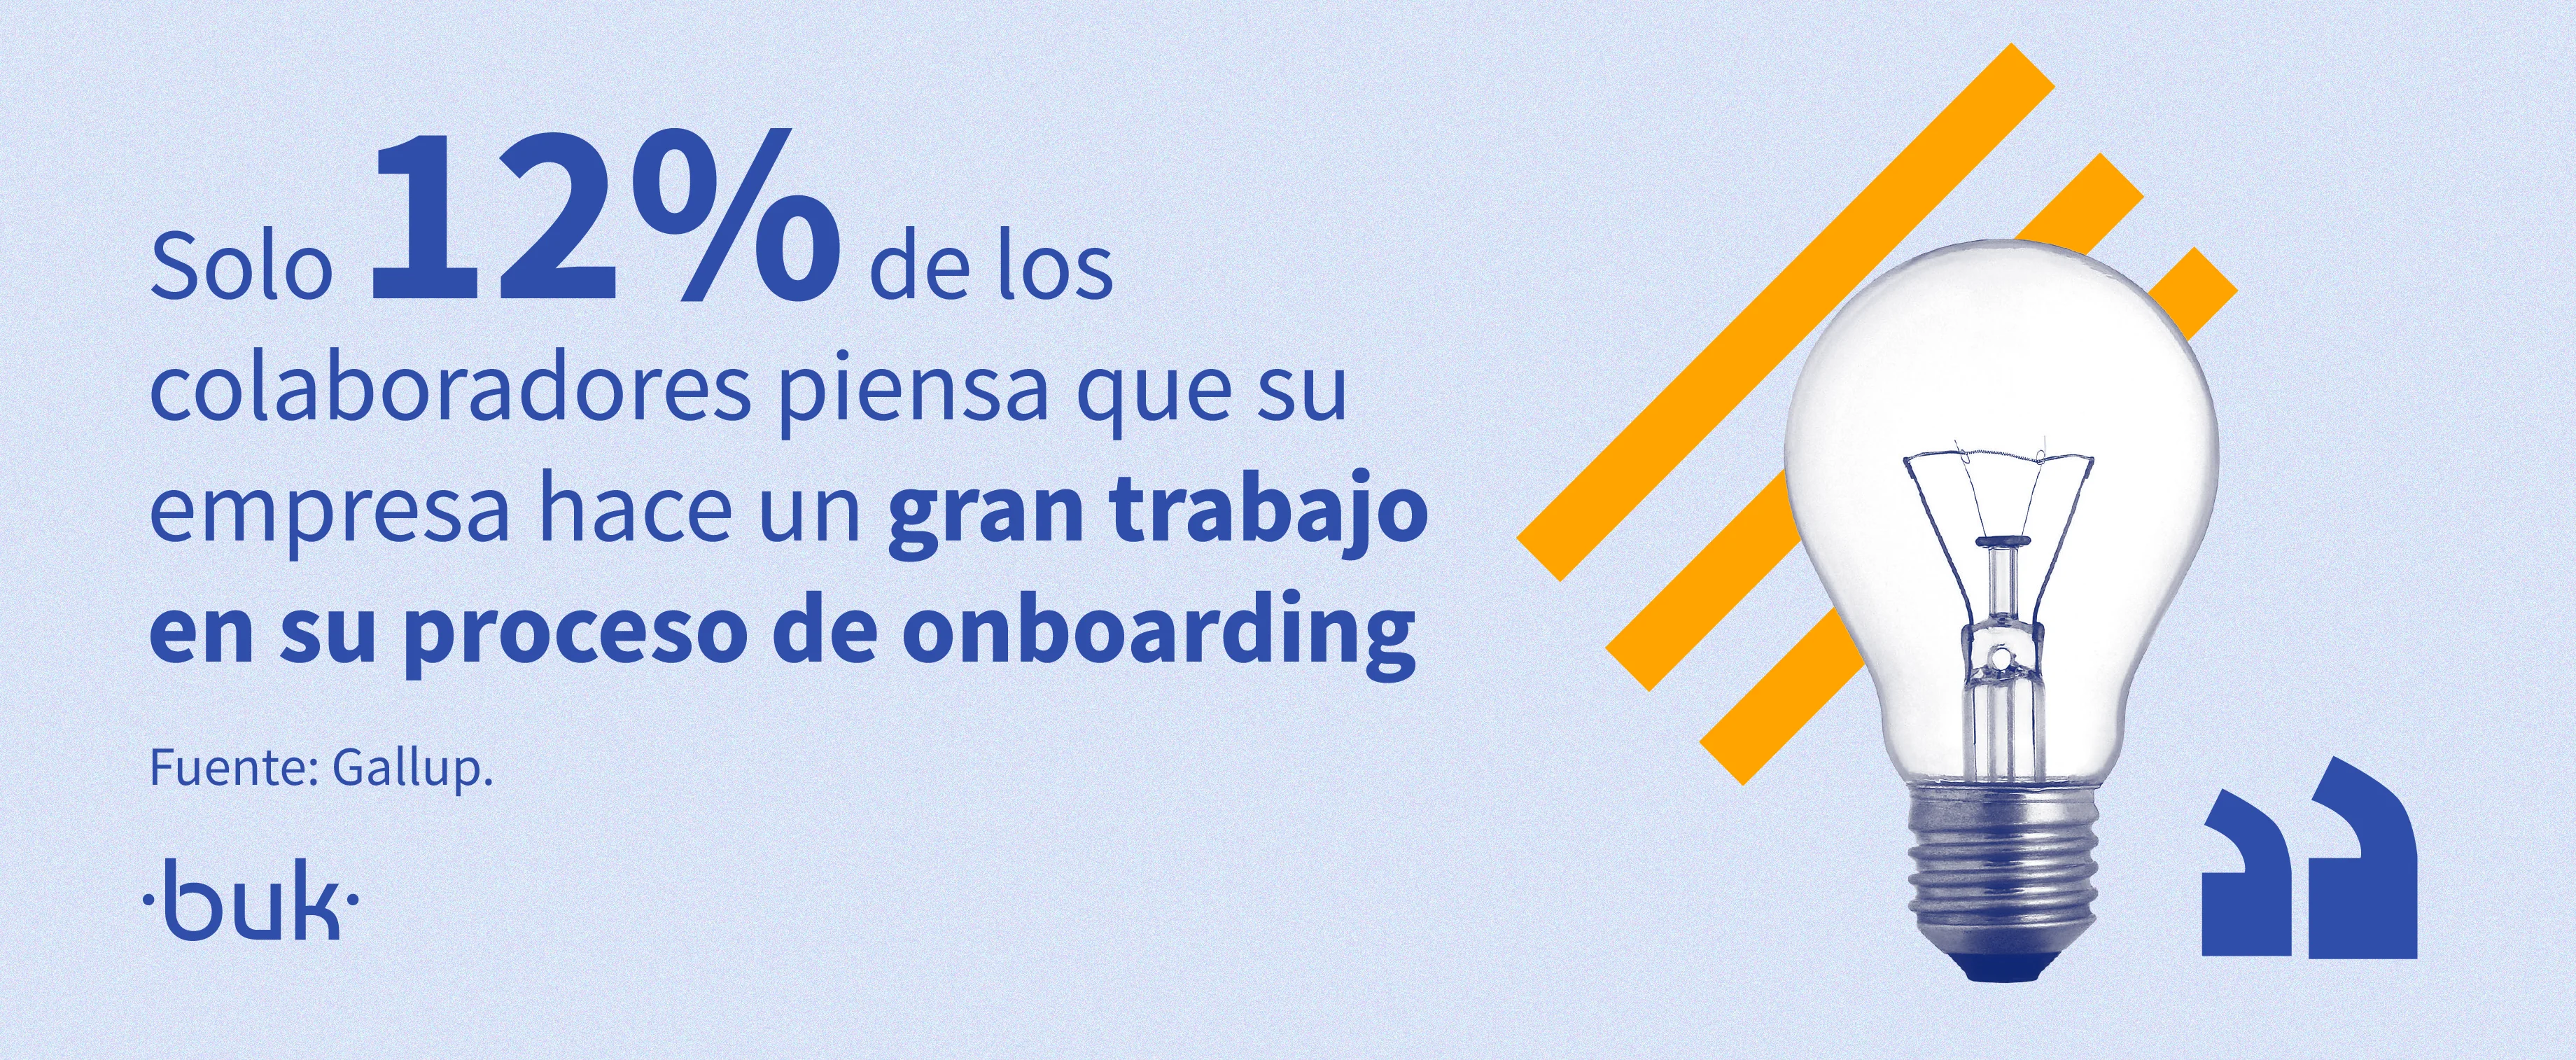 12 porciento de los colaboradores piensa que su empresa hace un gran trabajo en su proceso de onboarding